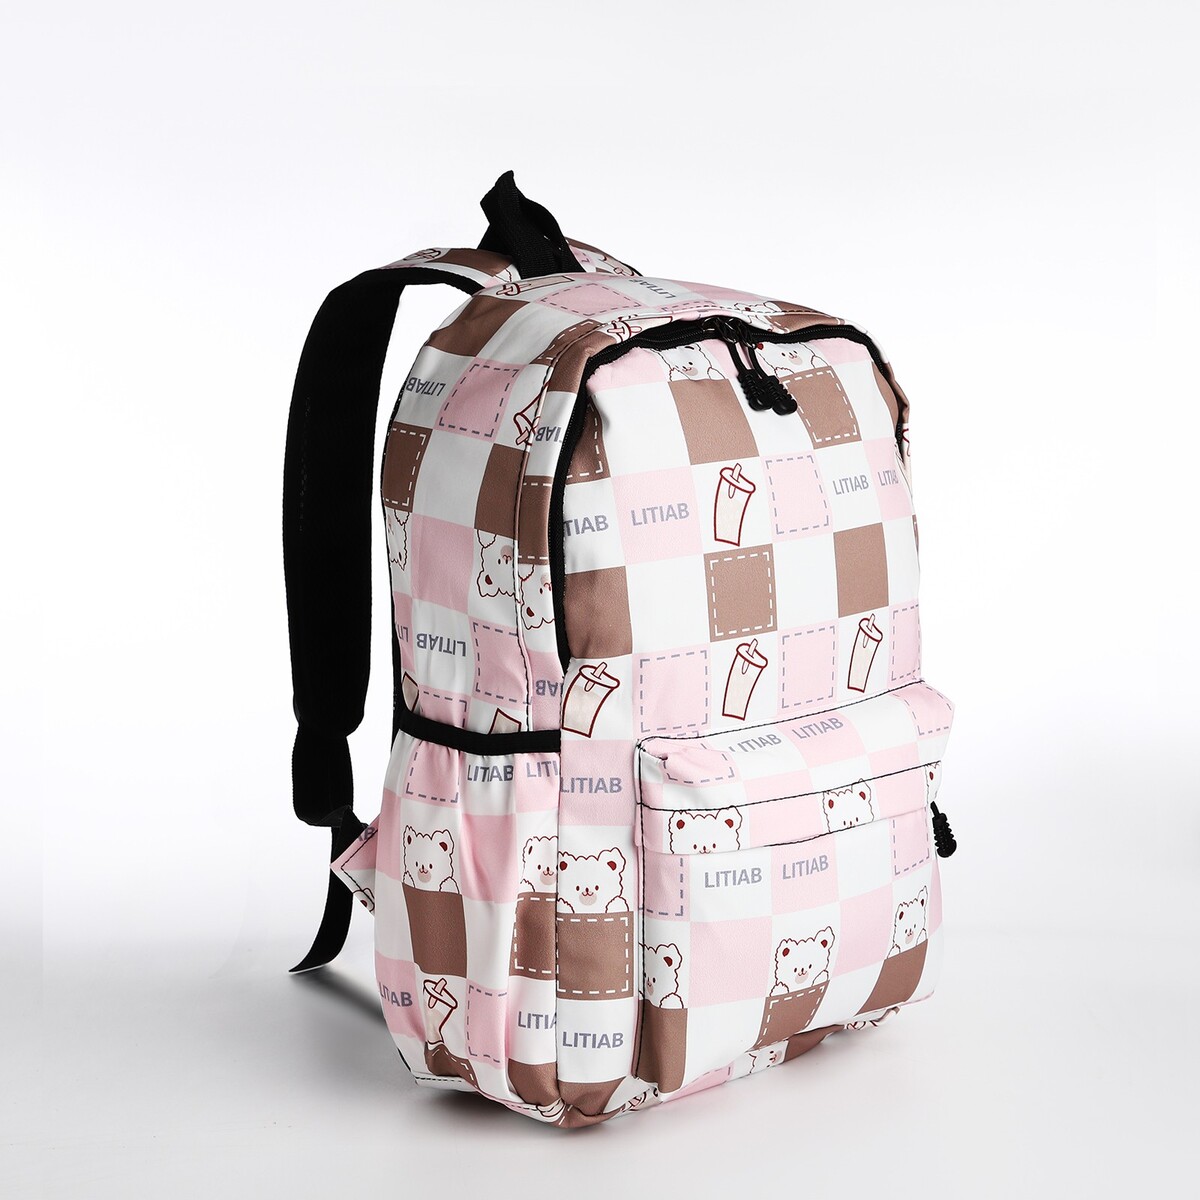 Рюкзак молодежный из текстиля, 3 кармана, цвет бежевый/розовый рюкзак на молнии наружный карман 2 боковых кармана бежевый